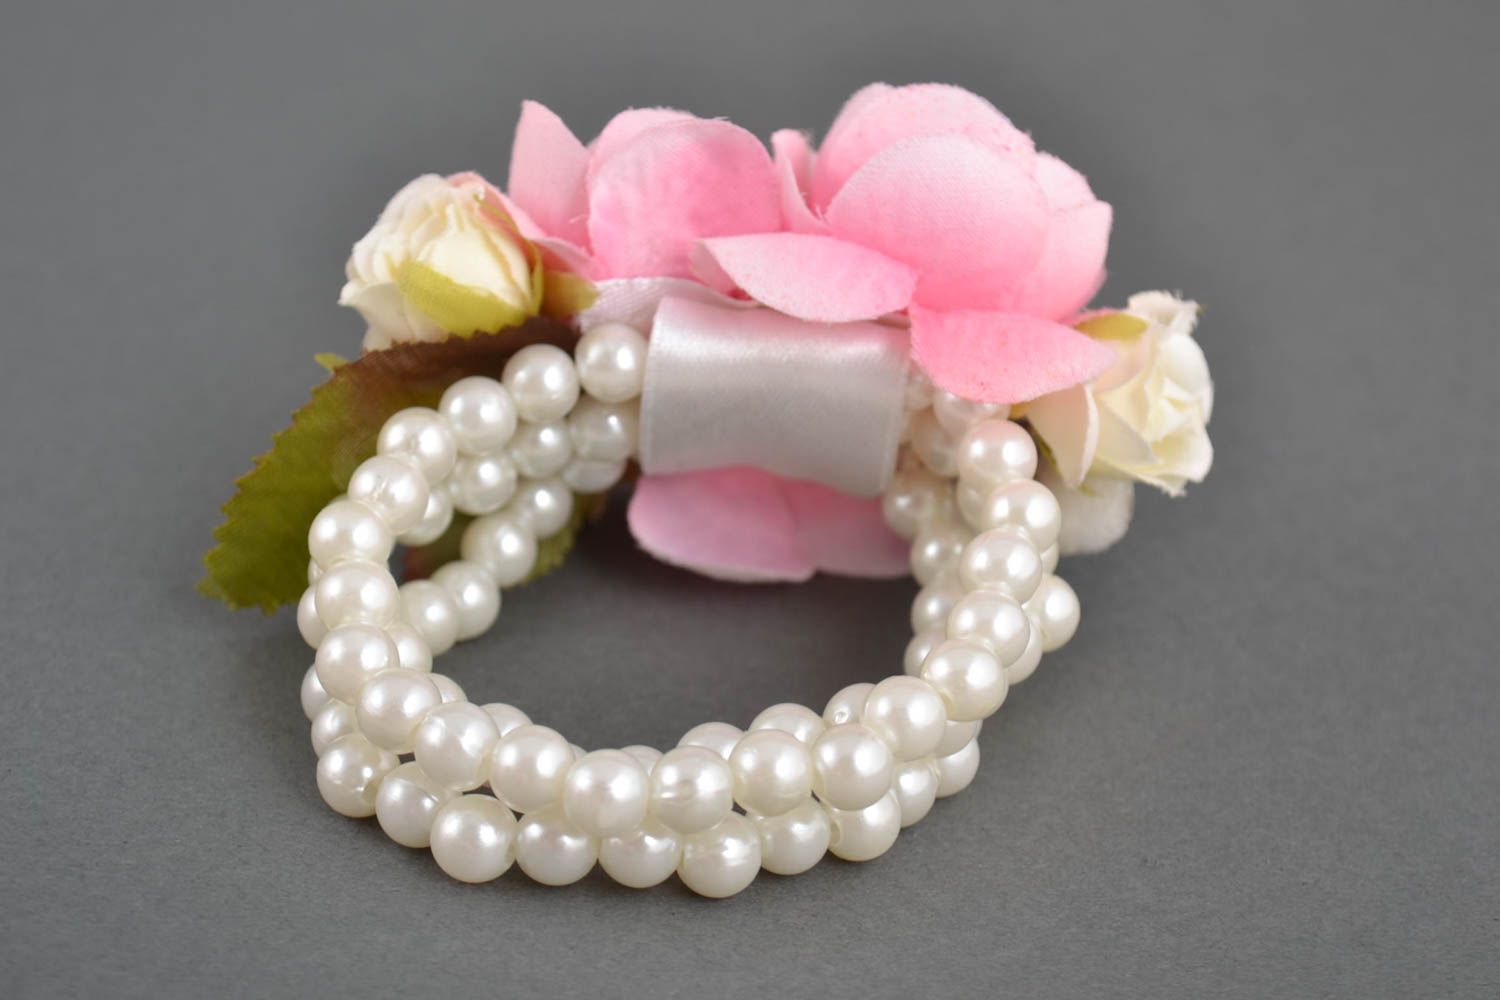 Handmade Armband Trauzeugin Blumenarmband Geschenk für Brautjungfer festlich foto 3